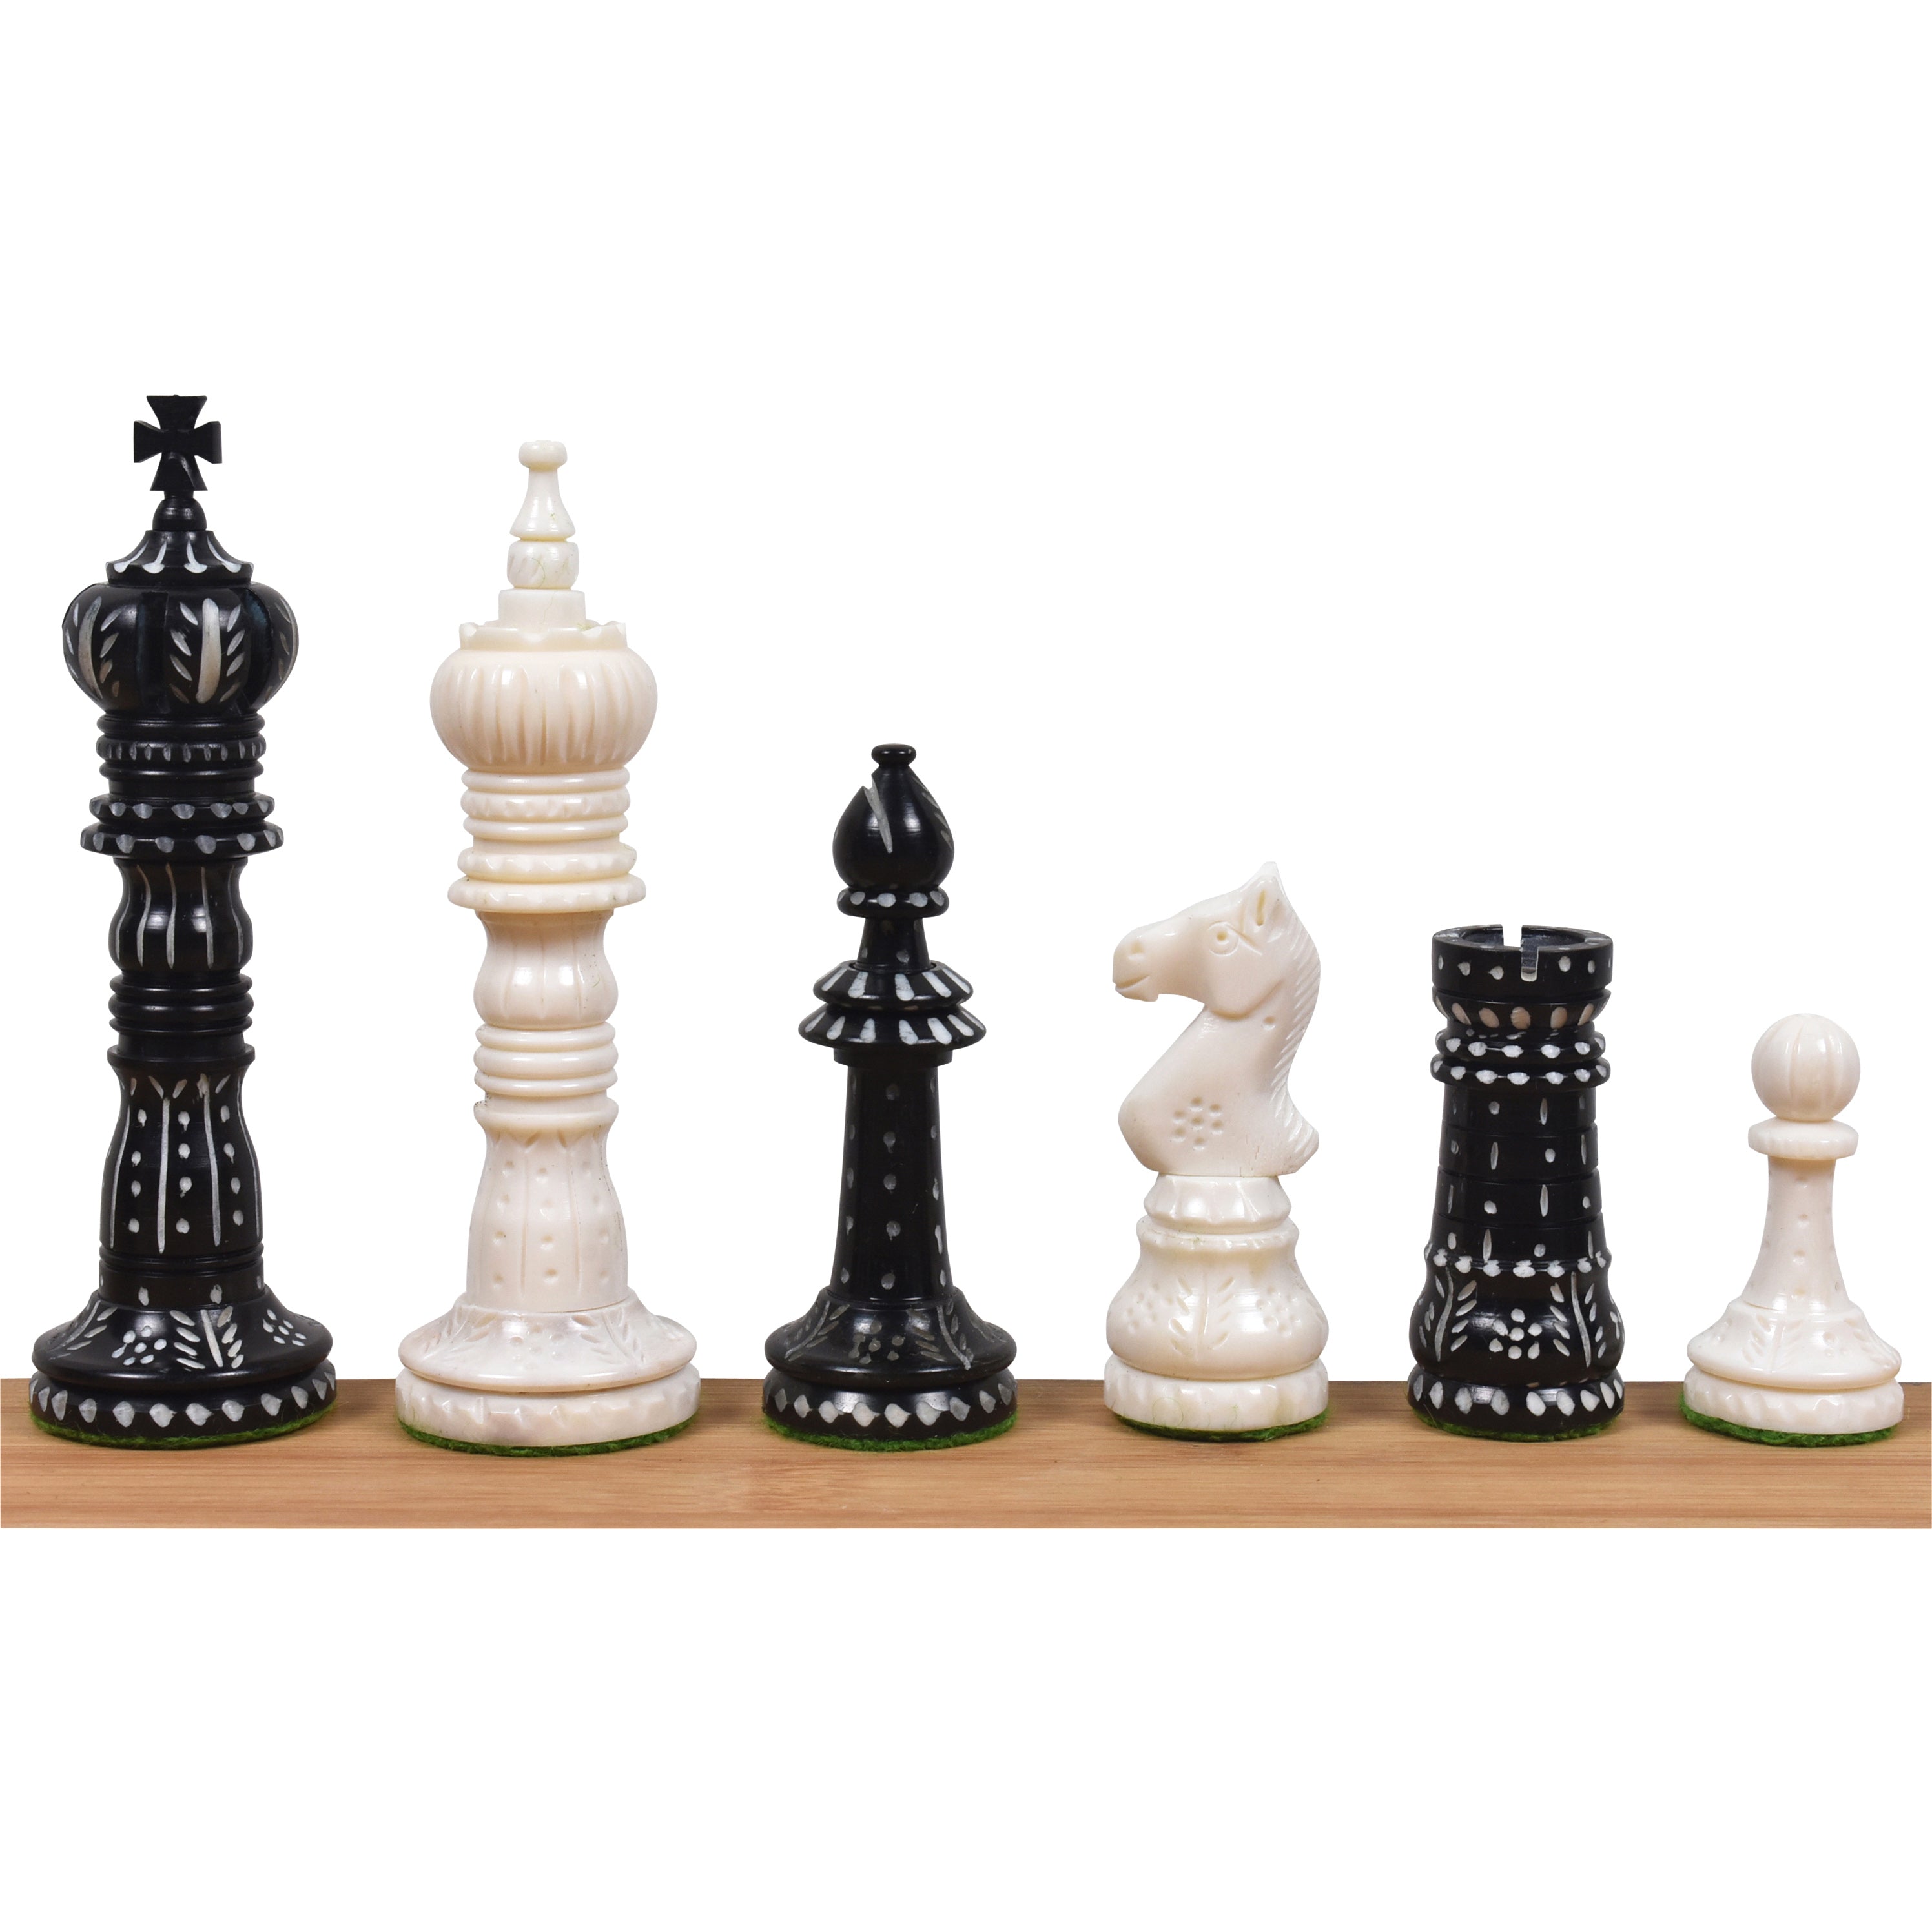 Cb games Wooden Chess Set Golden